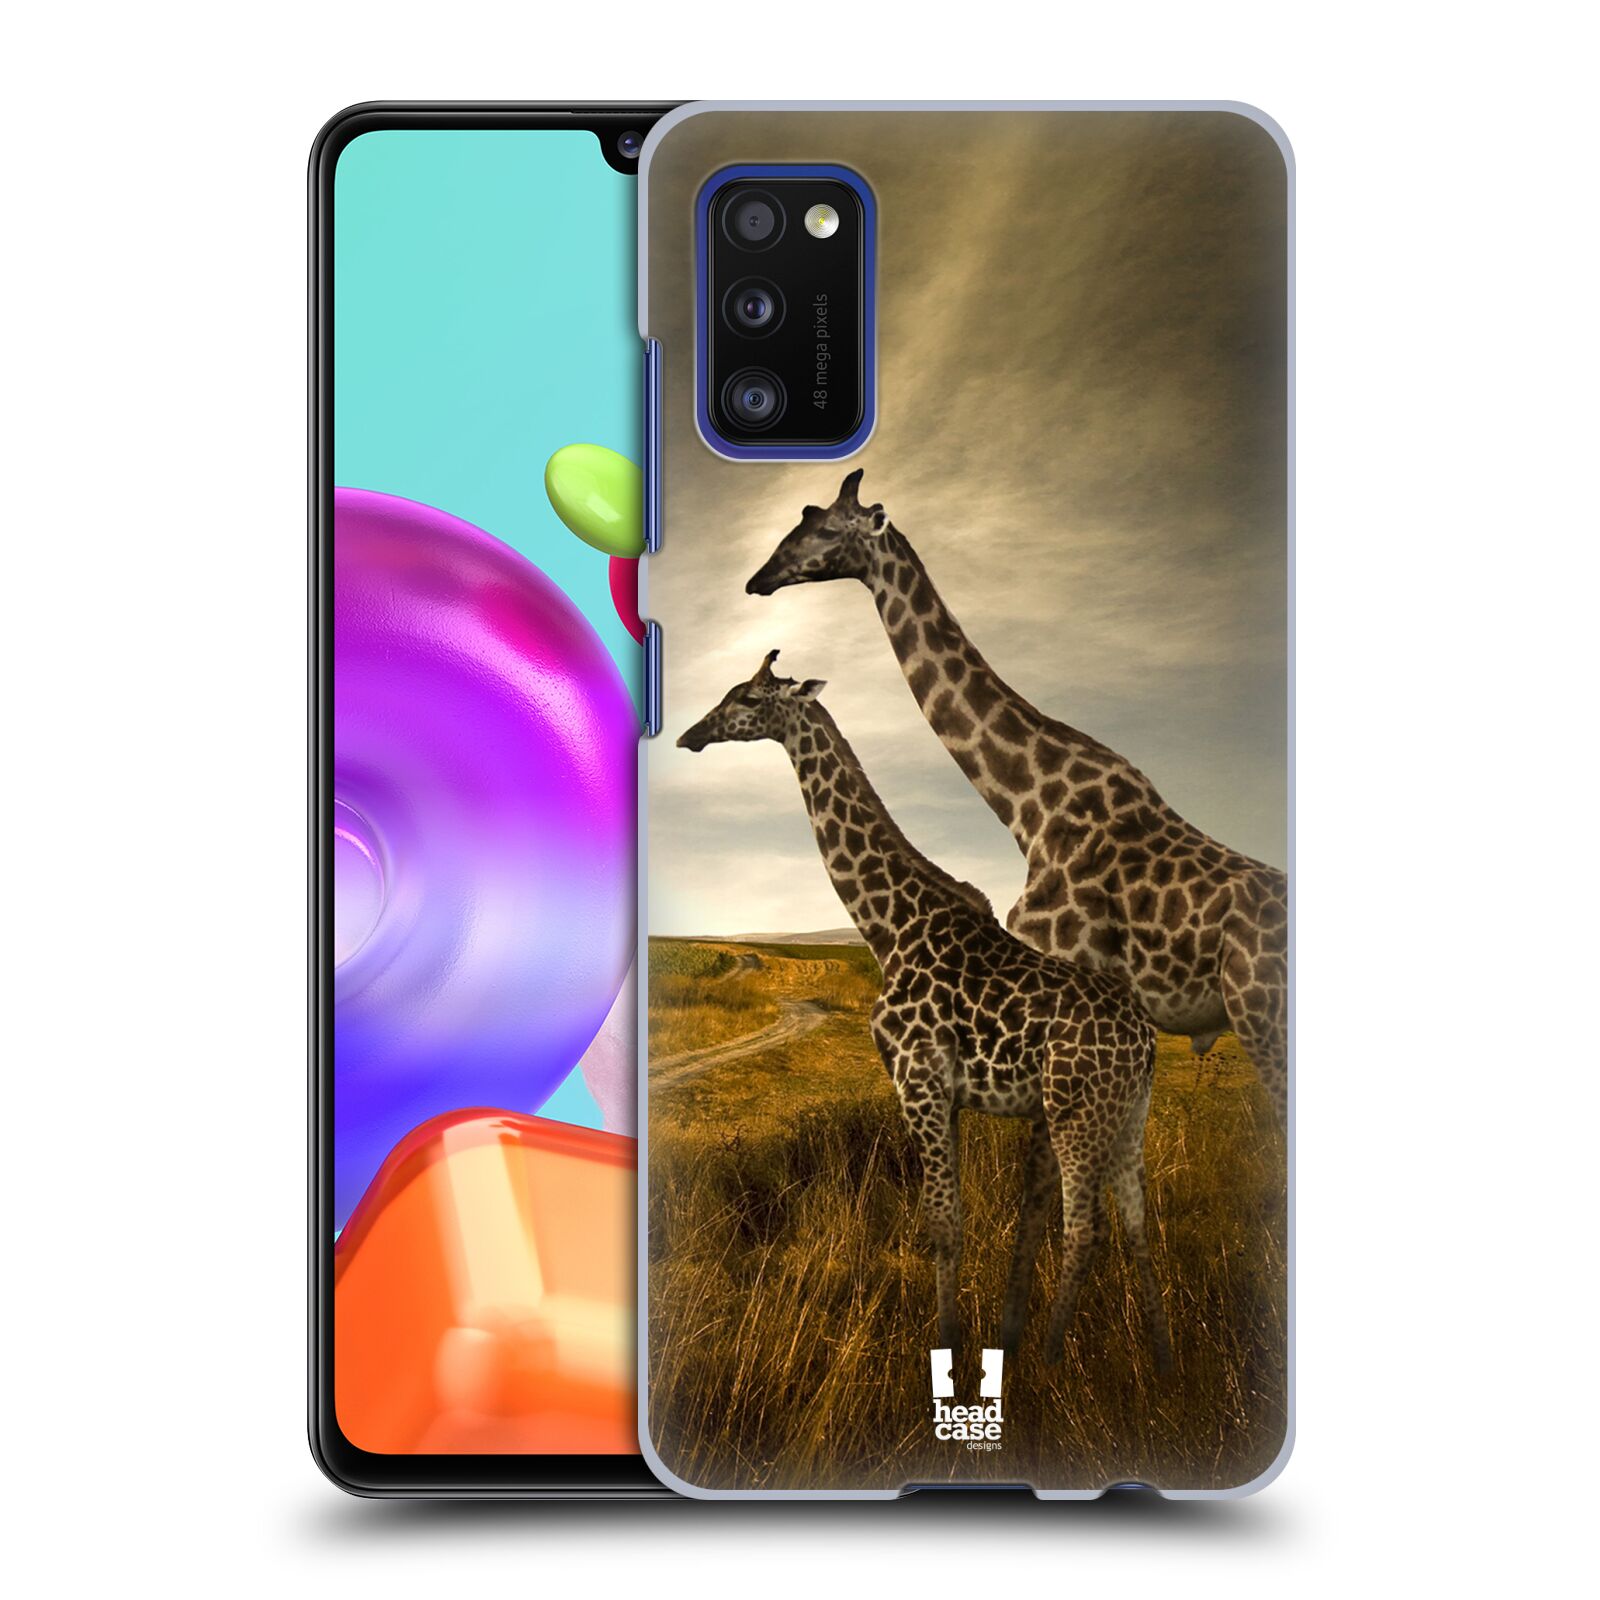 Zadní obal pro mobil Samsung Galaxy A41 - HEAD CASE - Svět zvířat žirafy